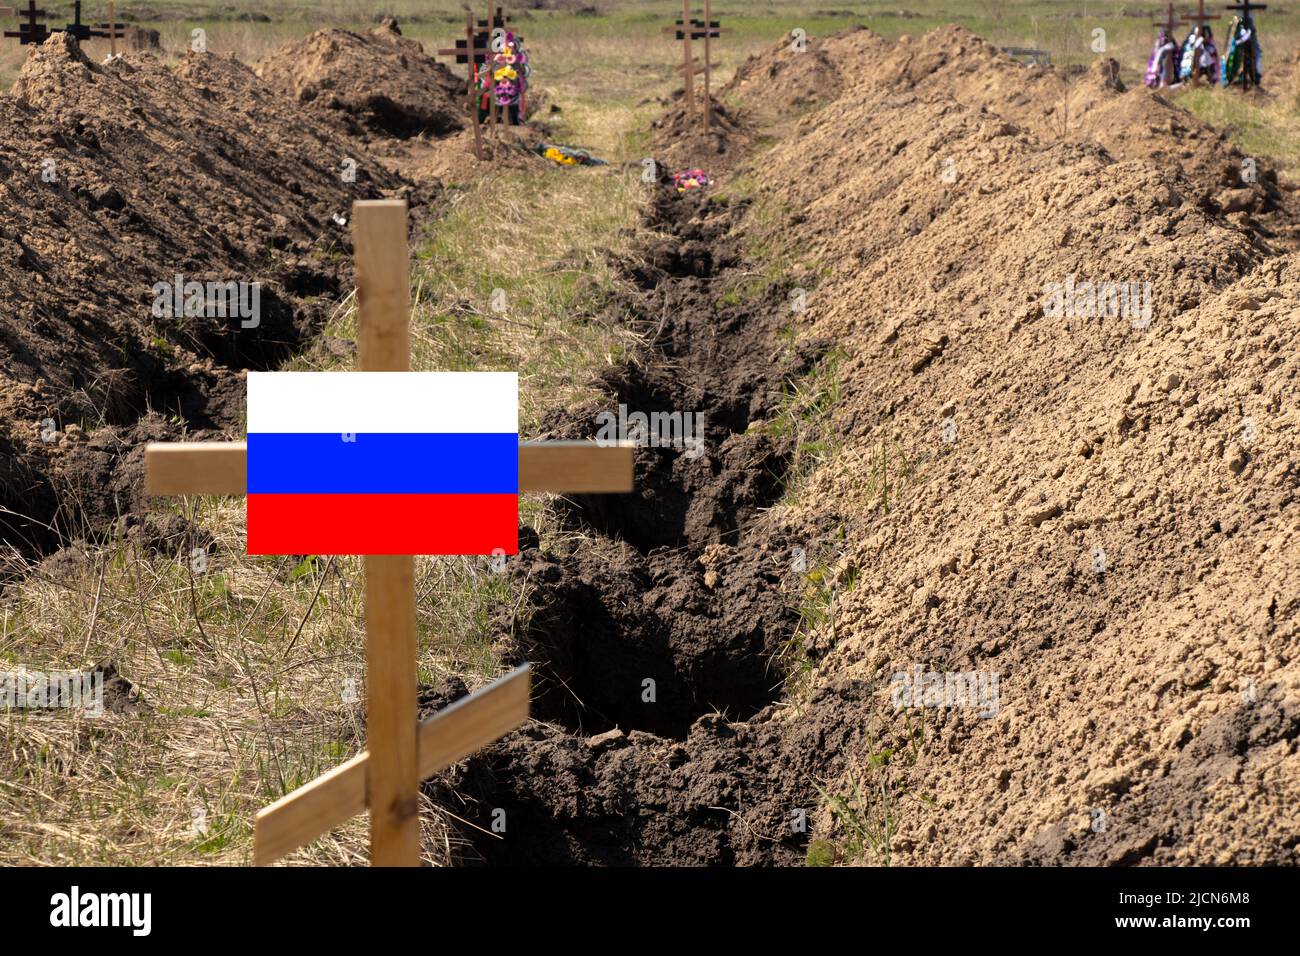 Recentemente scavato tombe nuove e una croce di legno con la bandiera della Russia, un cimitero per una tomba di massa di soldati russi, la guerra in Ucraina Foto Stock